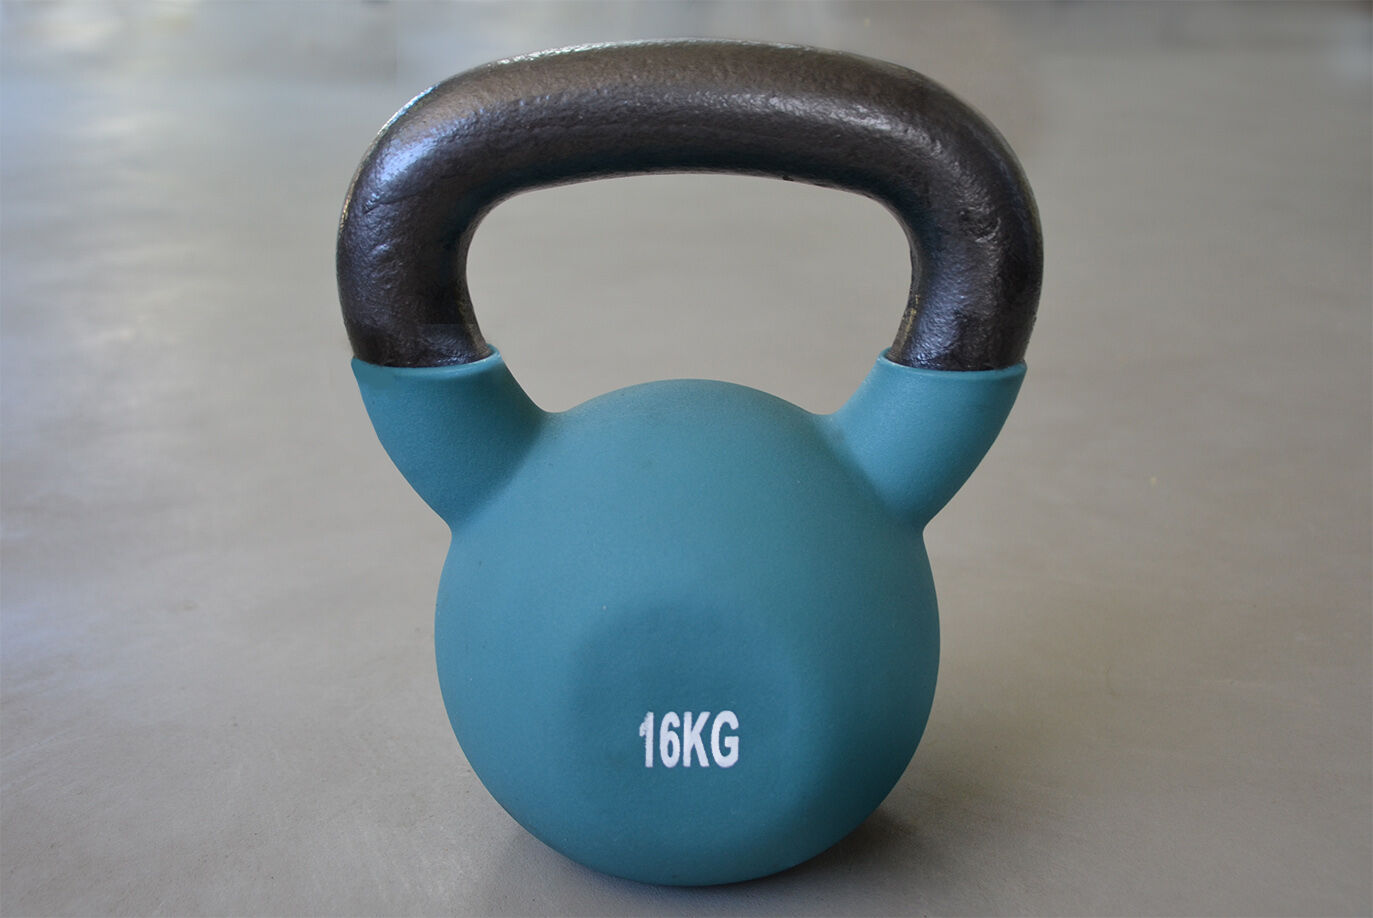 Body Solid KB16KG Premium Training Kettlebell - 16 kg.